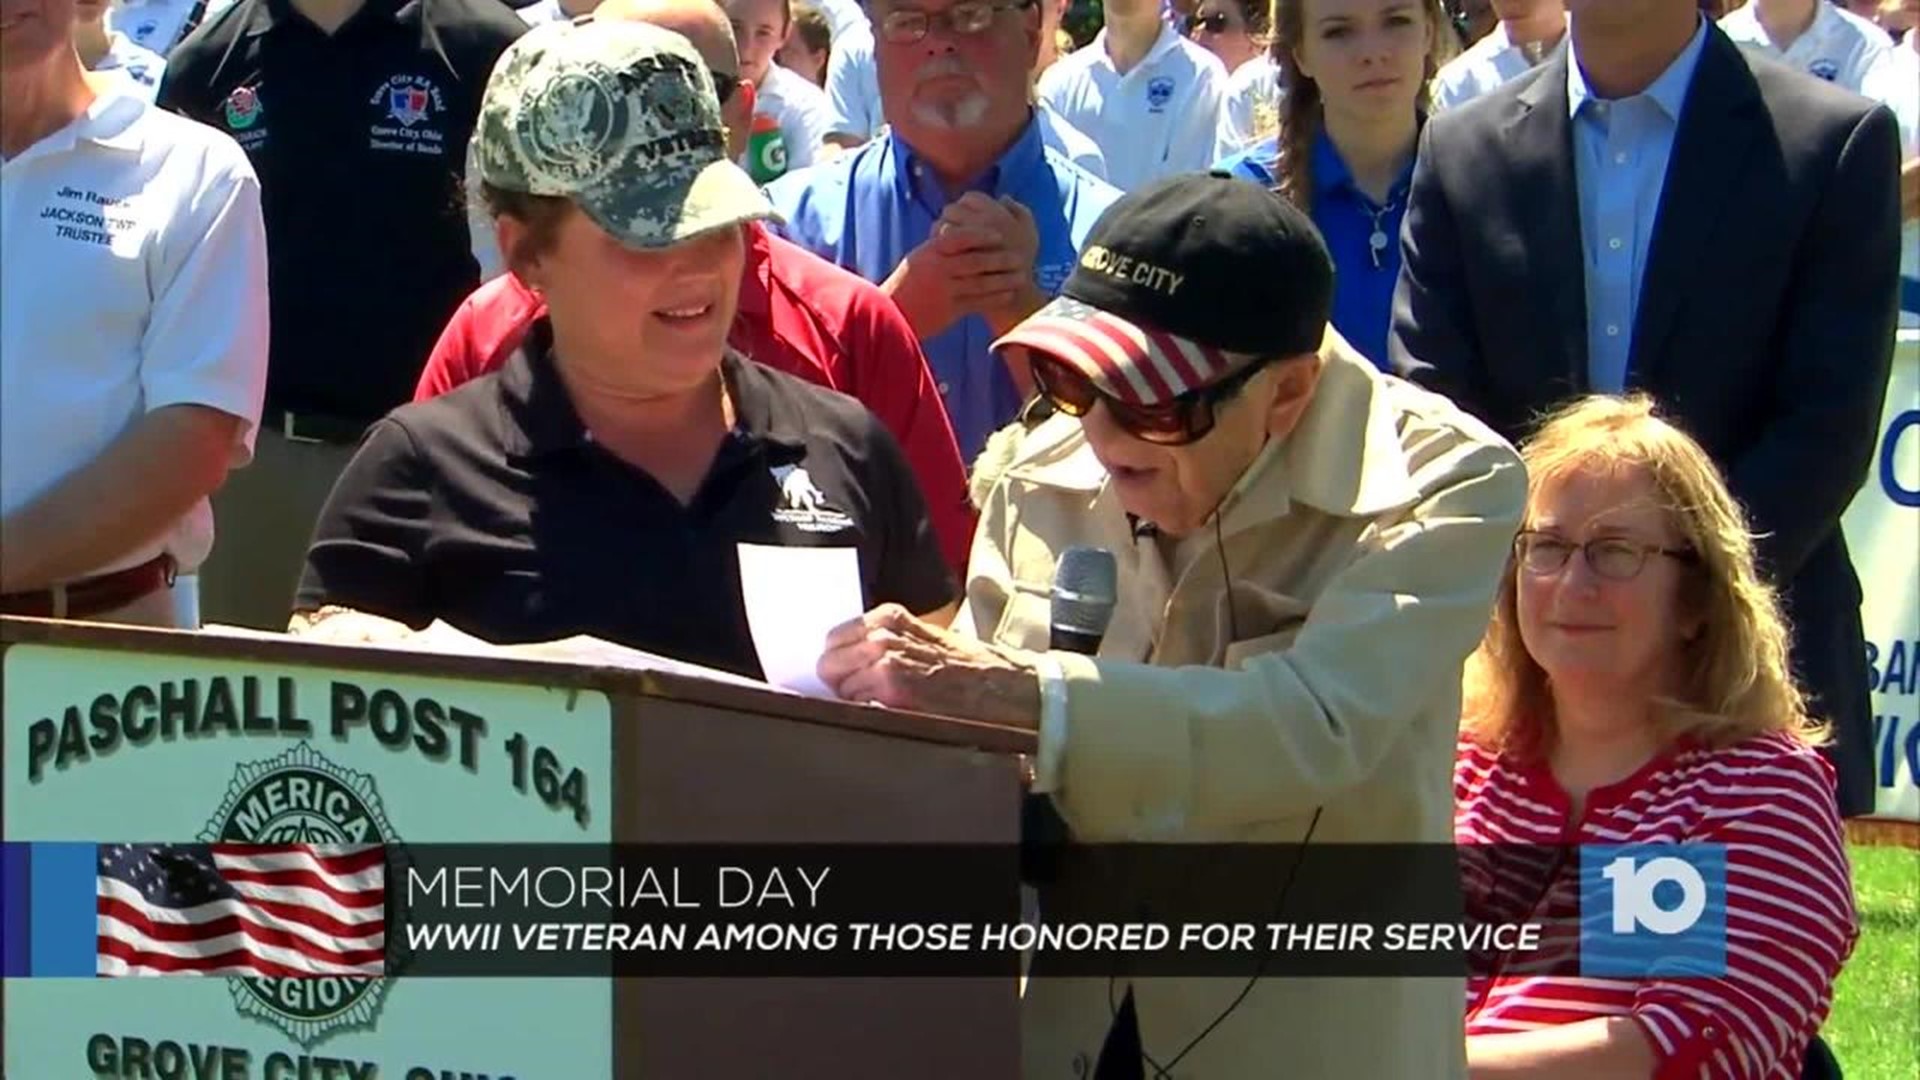 Grove City Memorial Day parade honors 99yearold veteran